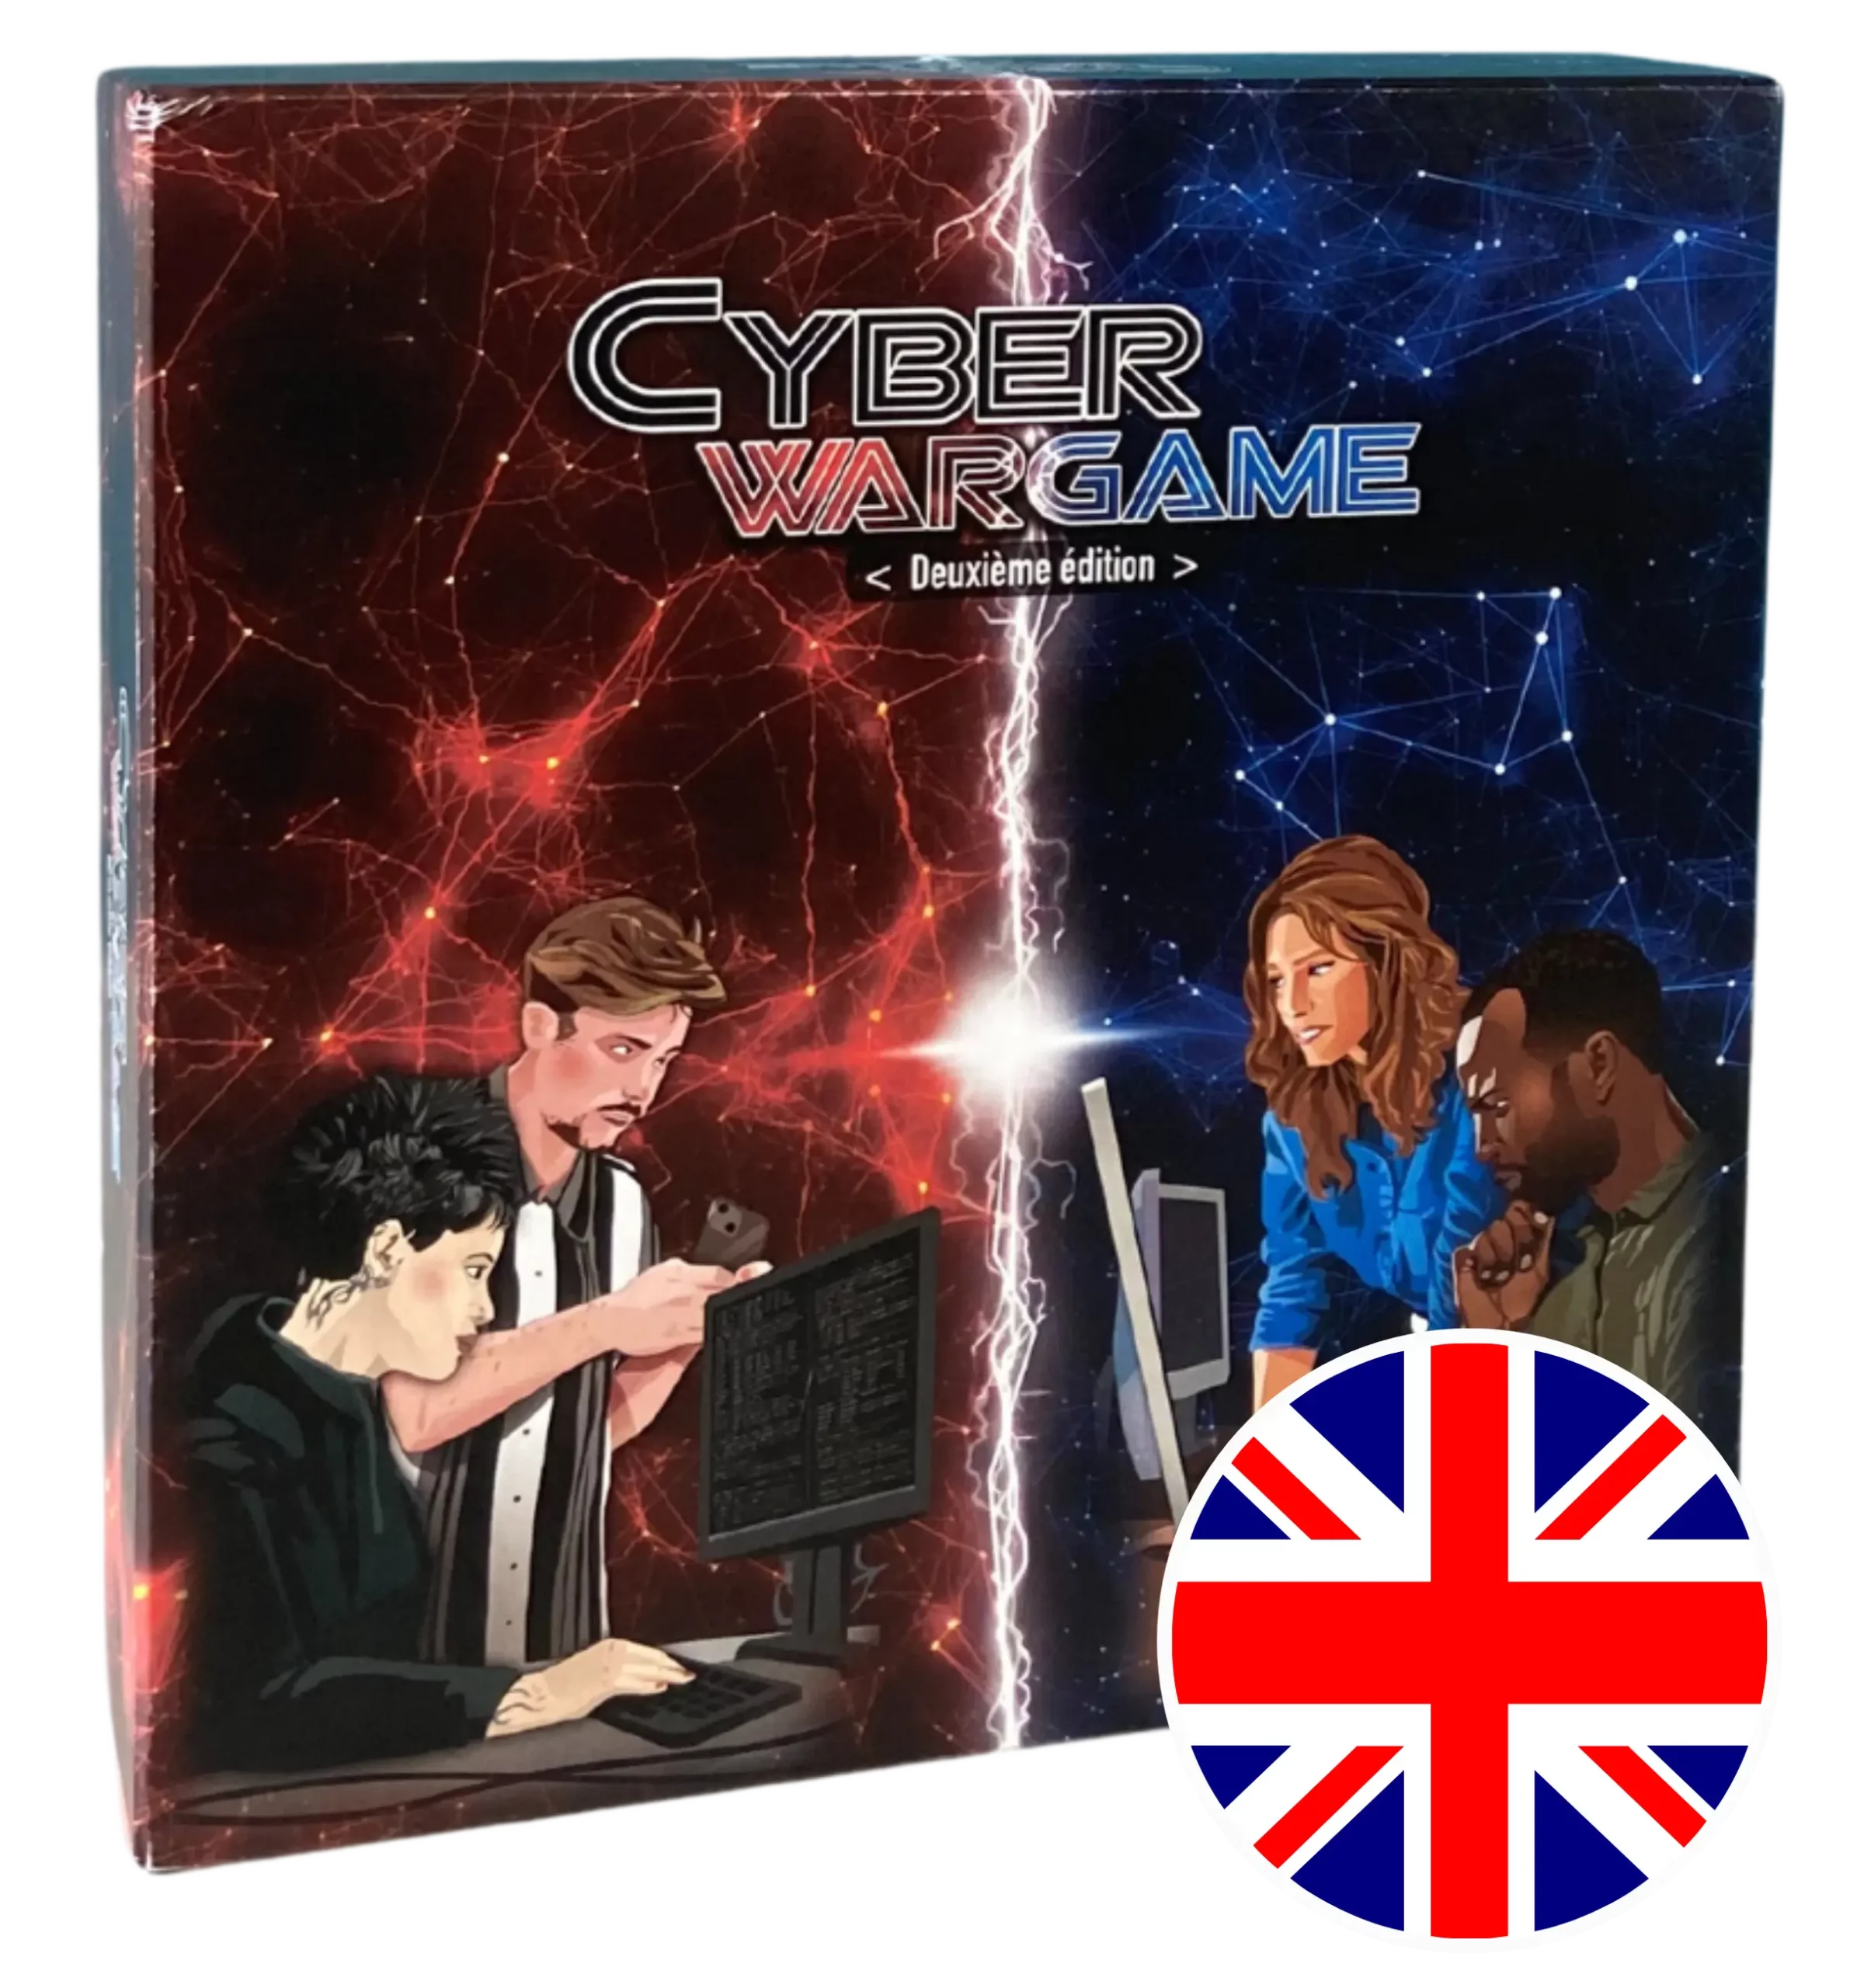 La version anglaise du serious game sur la cybersécurité, Cyber Wargame. / The English version of the cyber security serious game, Cyber Wargame.